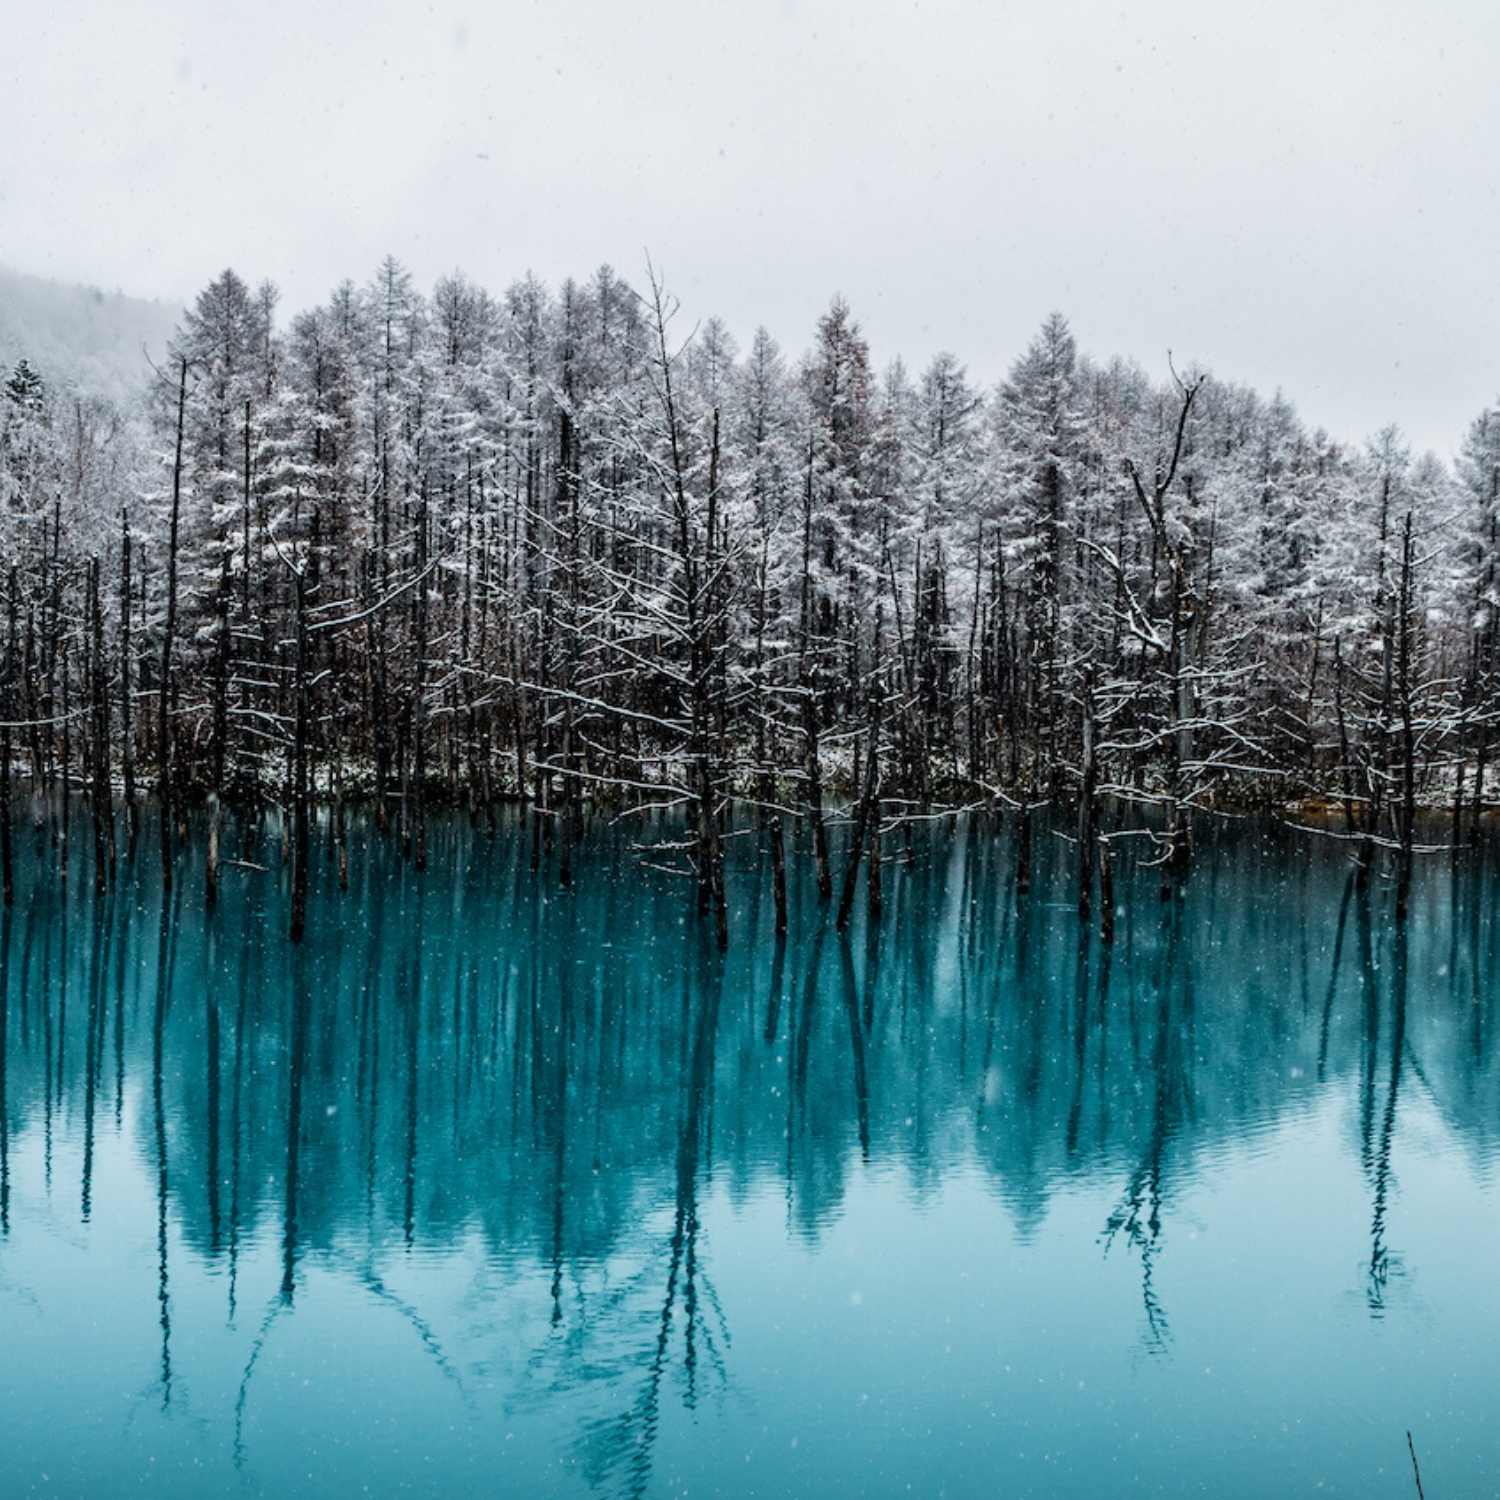 Bieii Blue Pond Japan in Winter Photography Tour with Ignacio Palacios